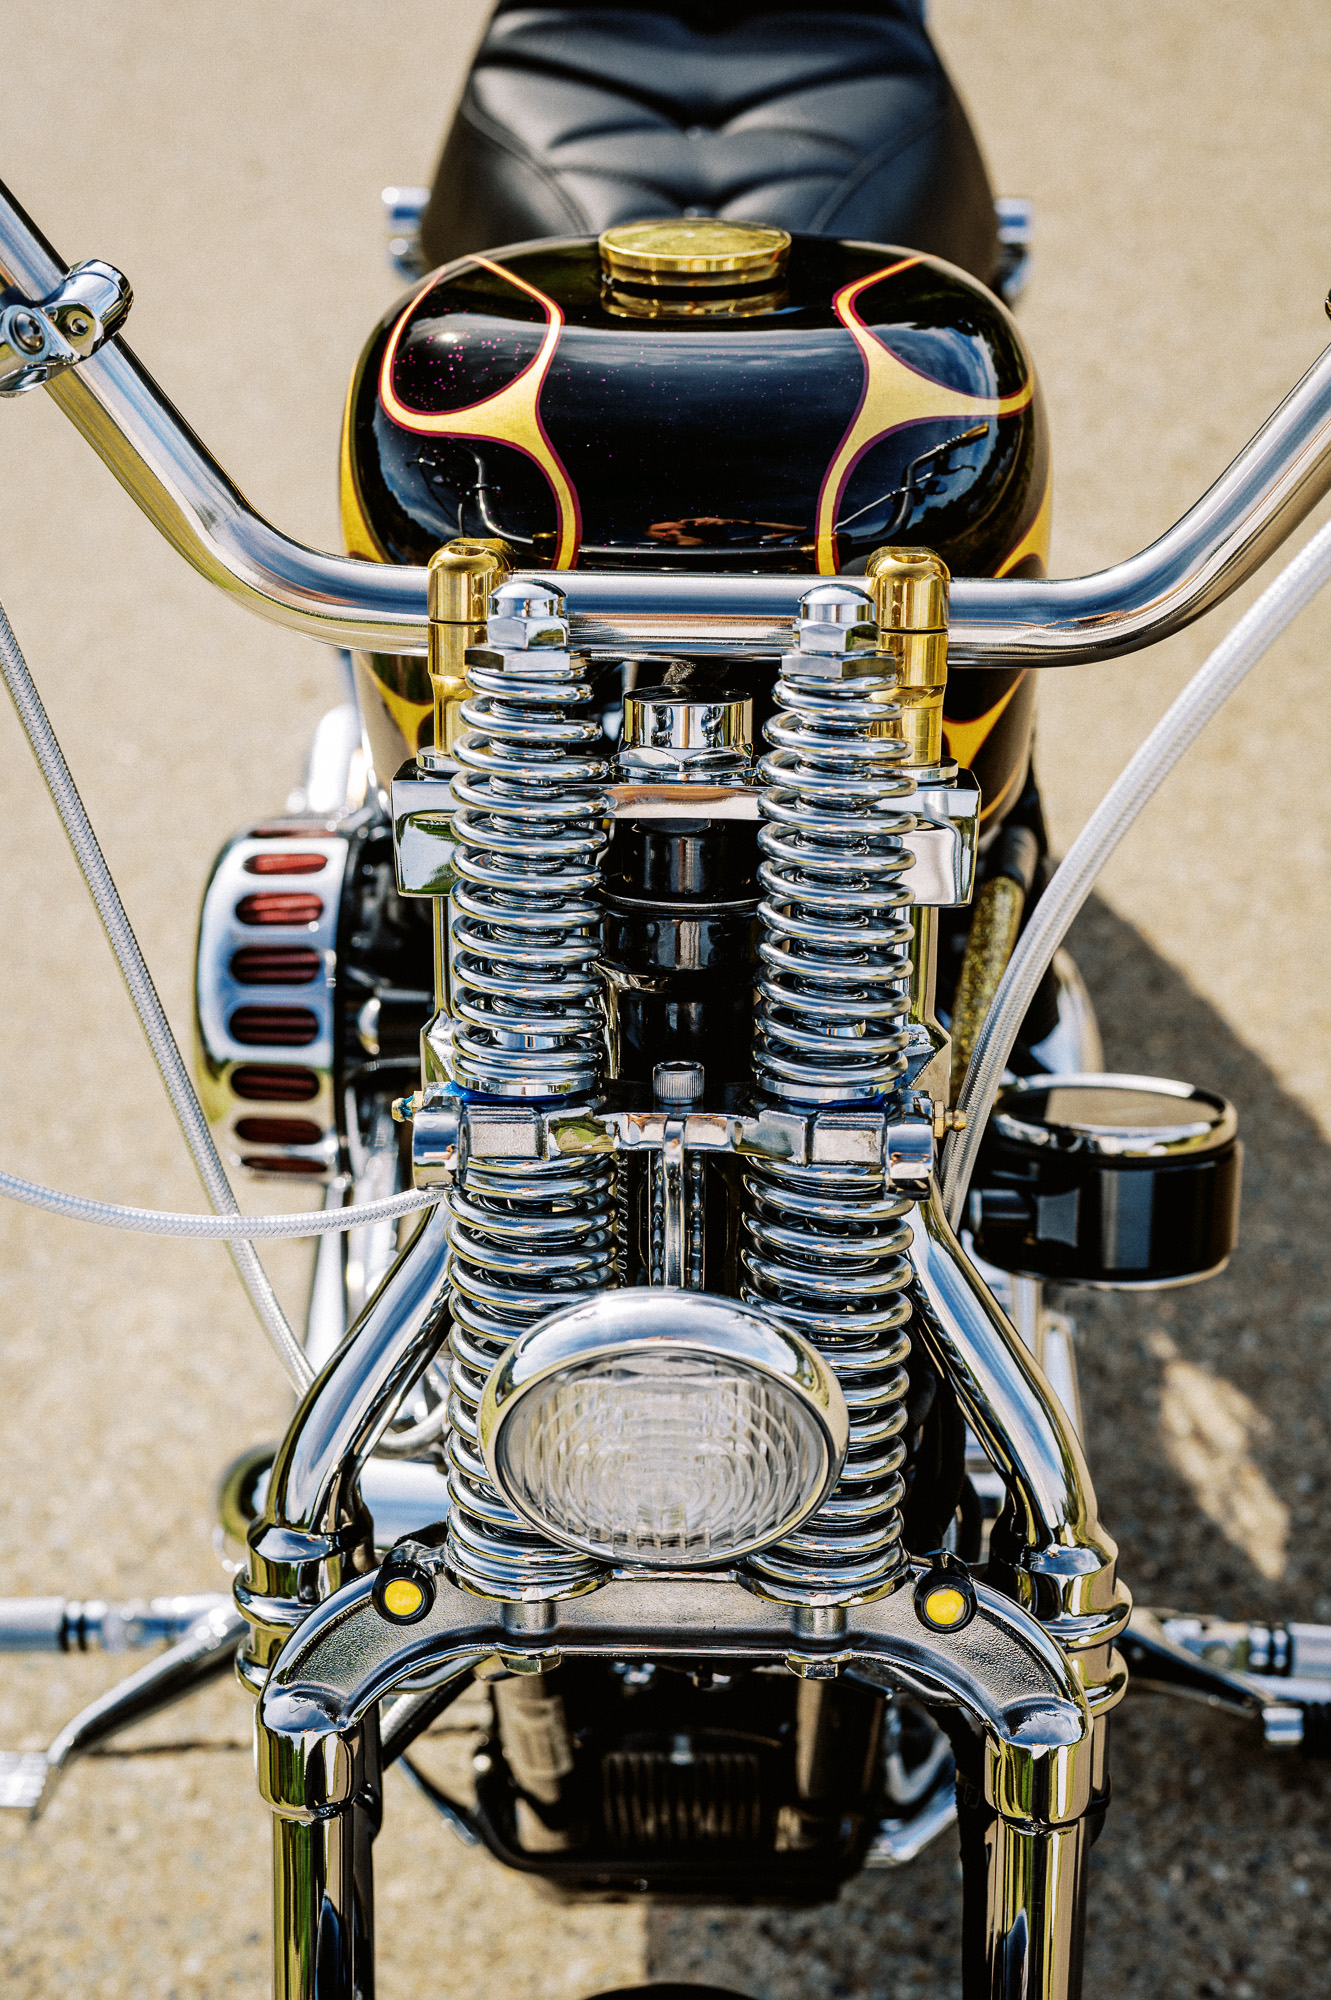 Avant du chopper Harley Sportster 2015 de Zen Motorcycle